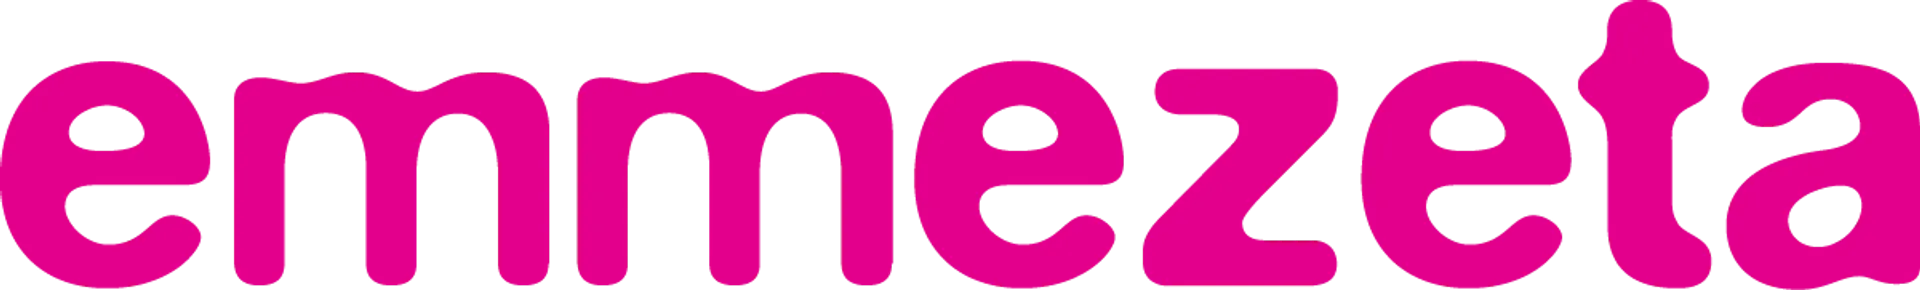 EMMEZETA logo